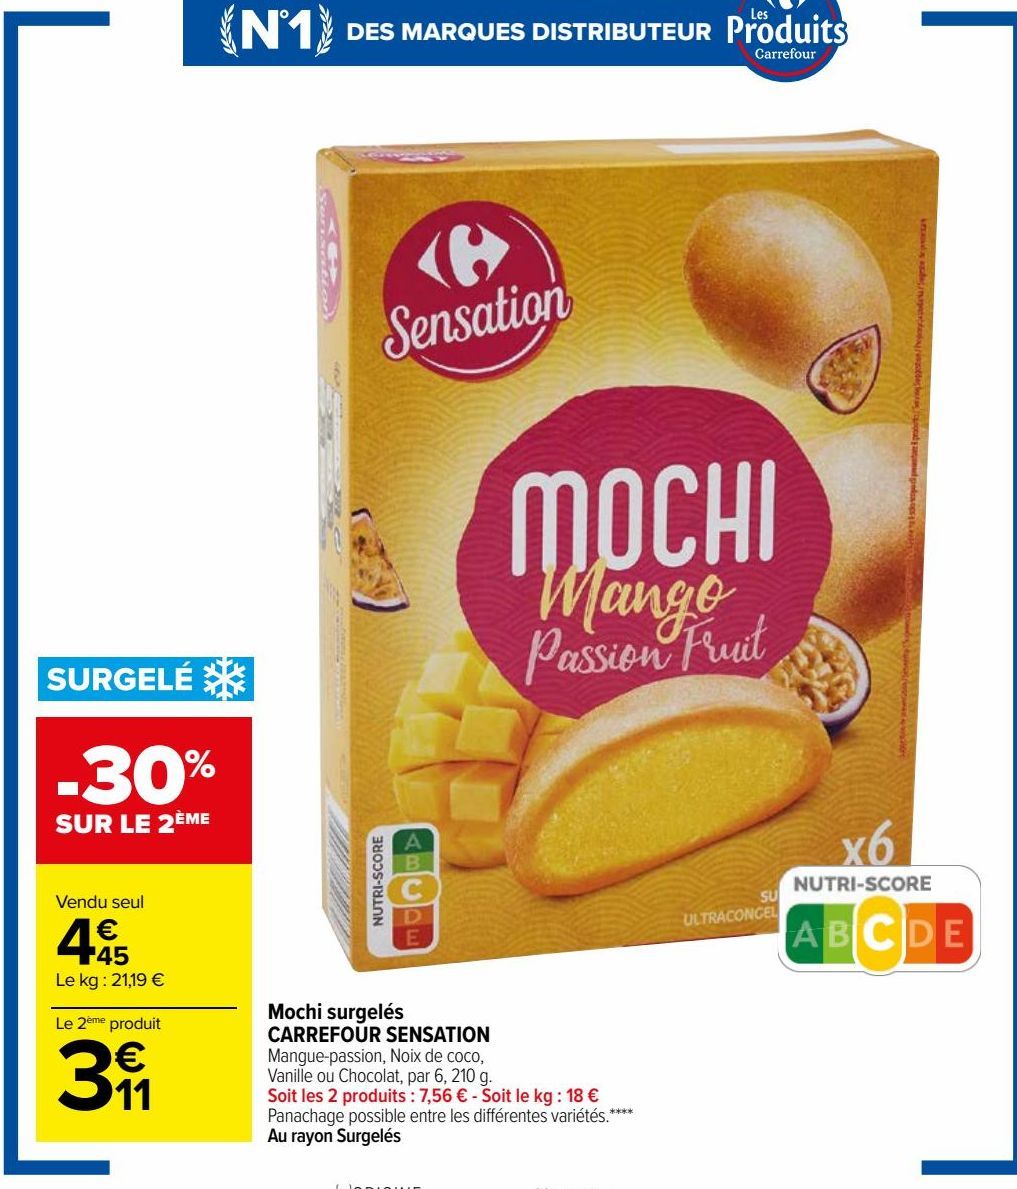 Mochi surgelés Carrefour Sensation